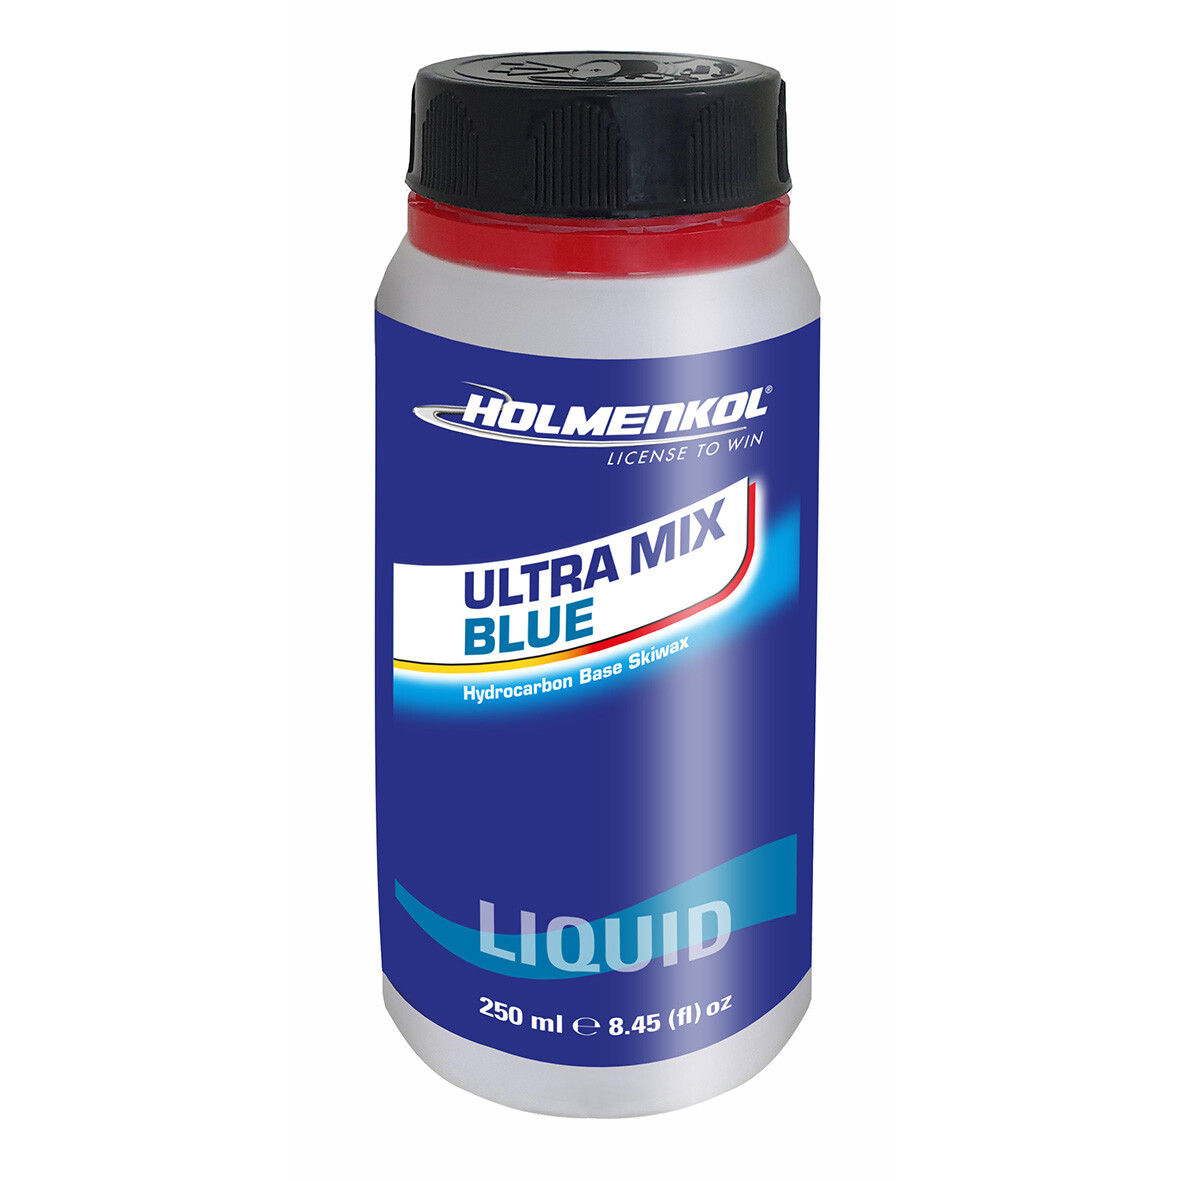 Holmenkol Ultramix Blue liquid wax 250 ml